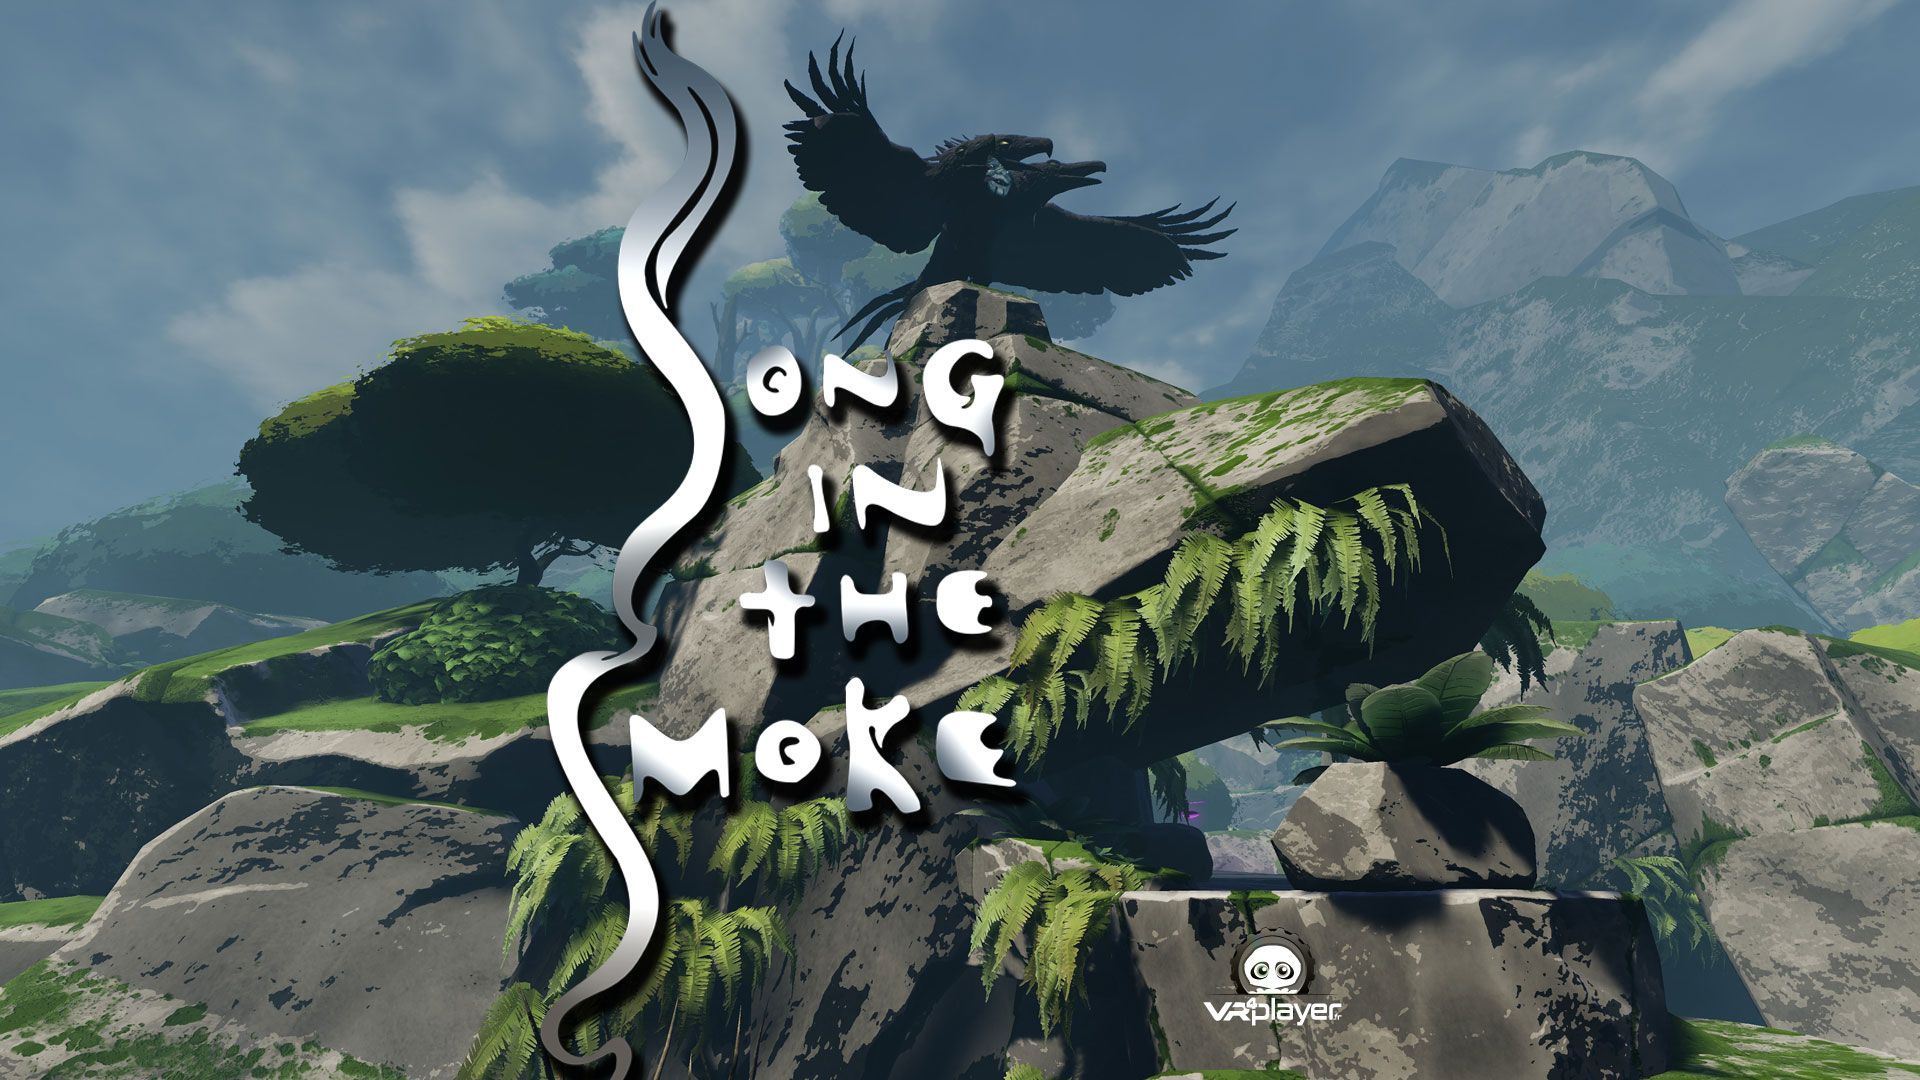 PlayStation VR : Song in the Smoke, un lancement difficile sur PSVR et PC